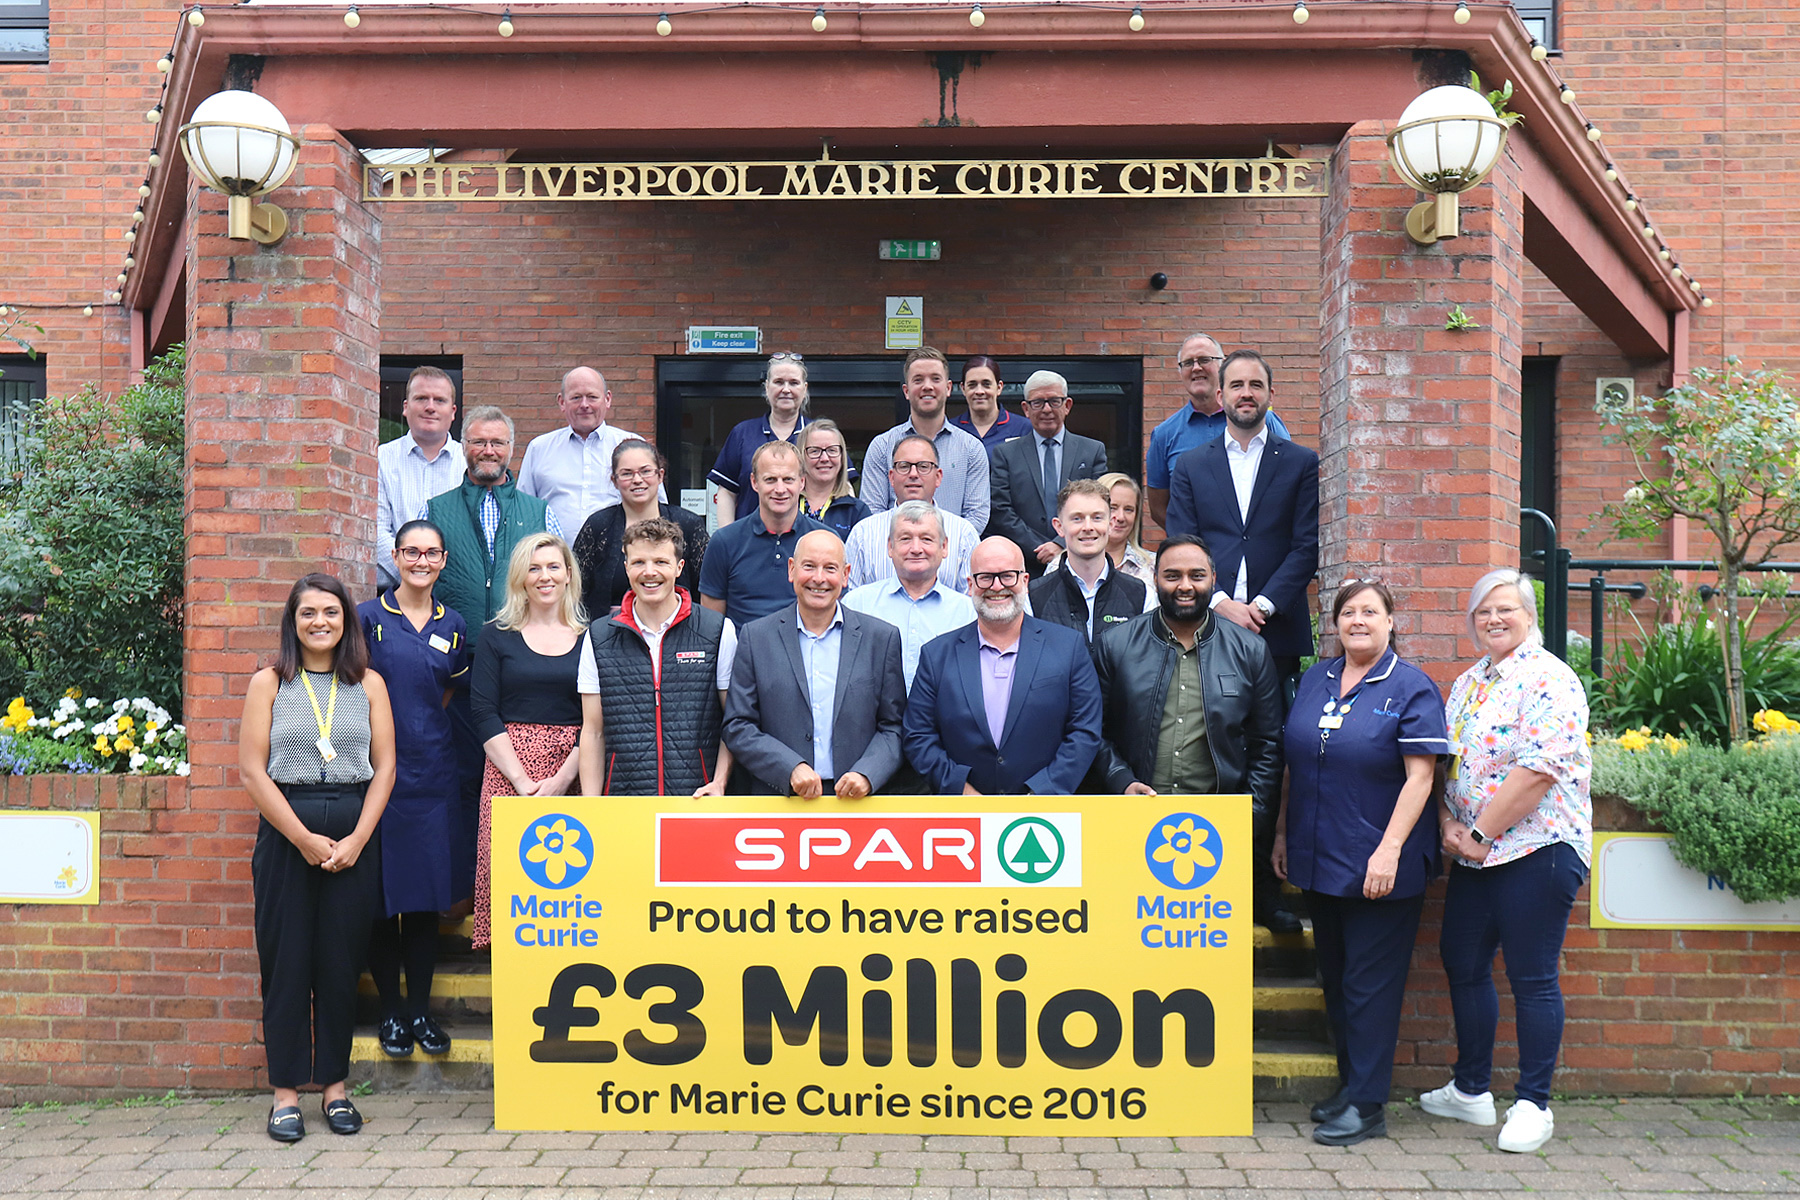 SPAR UK celebrates raising £3 million for Marie Curie